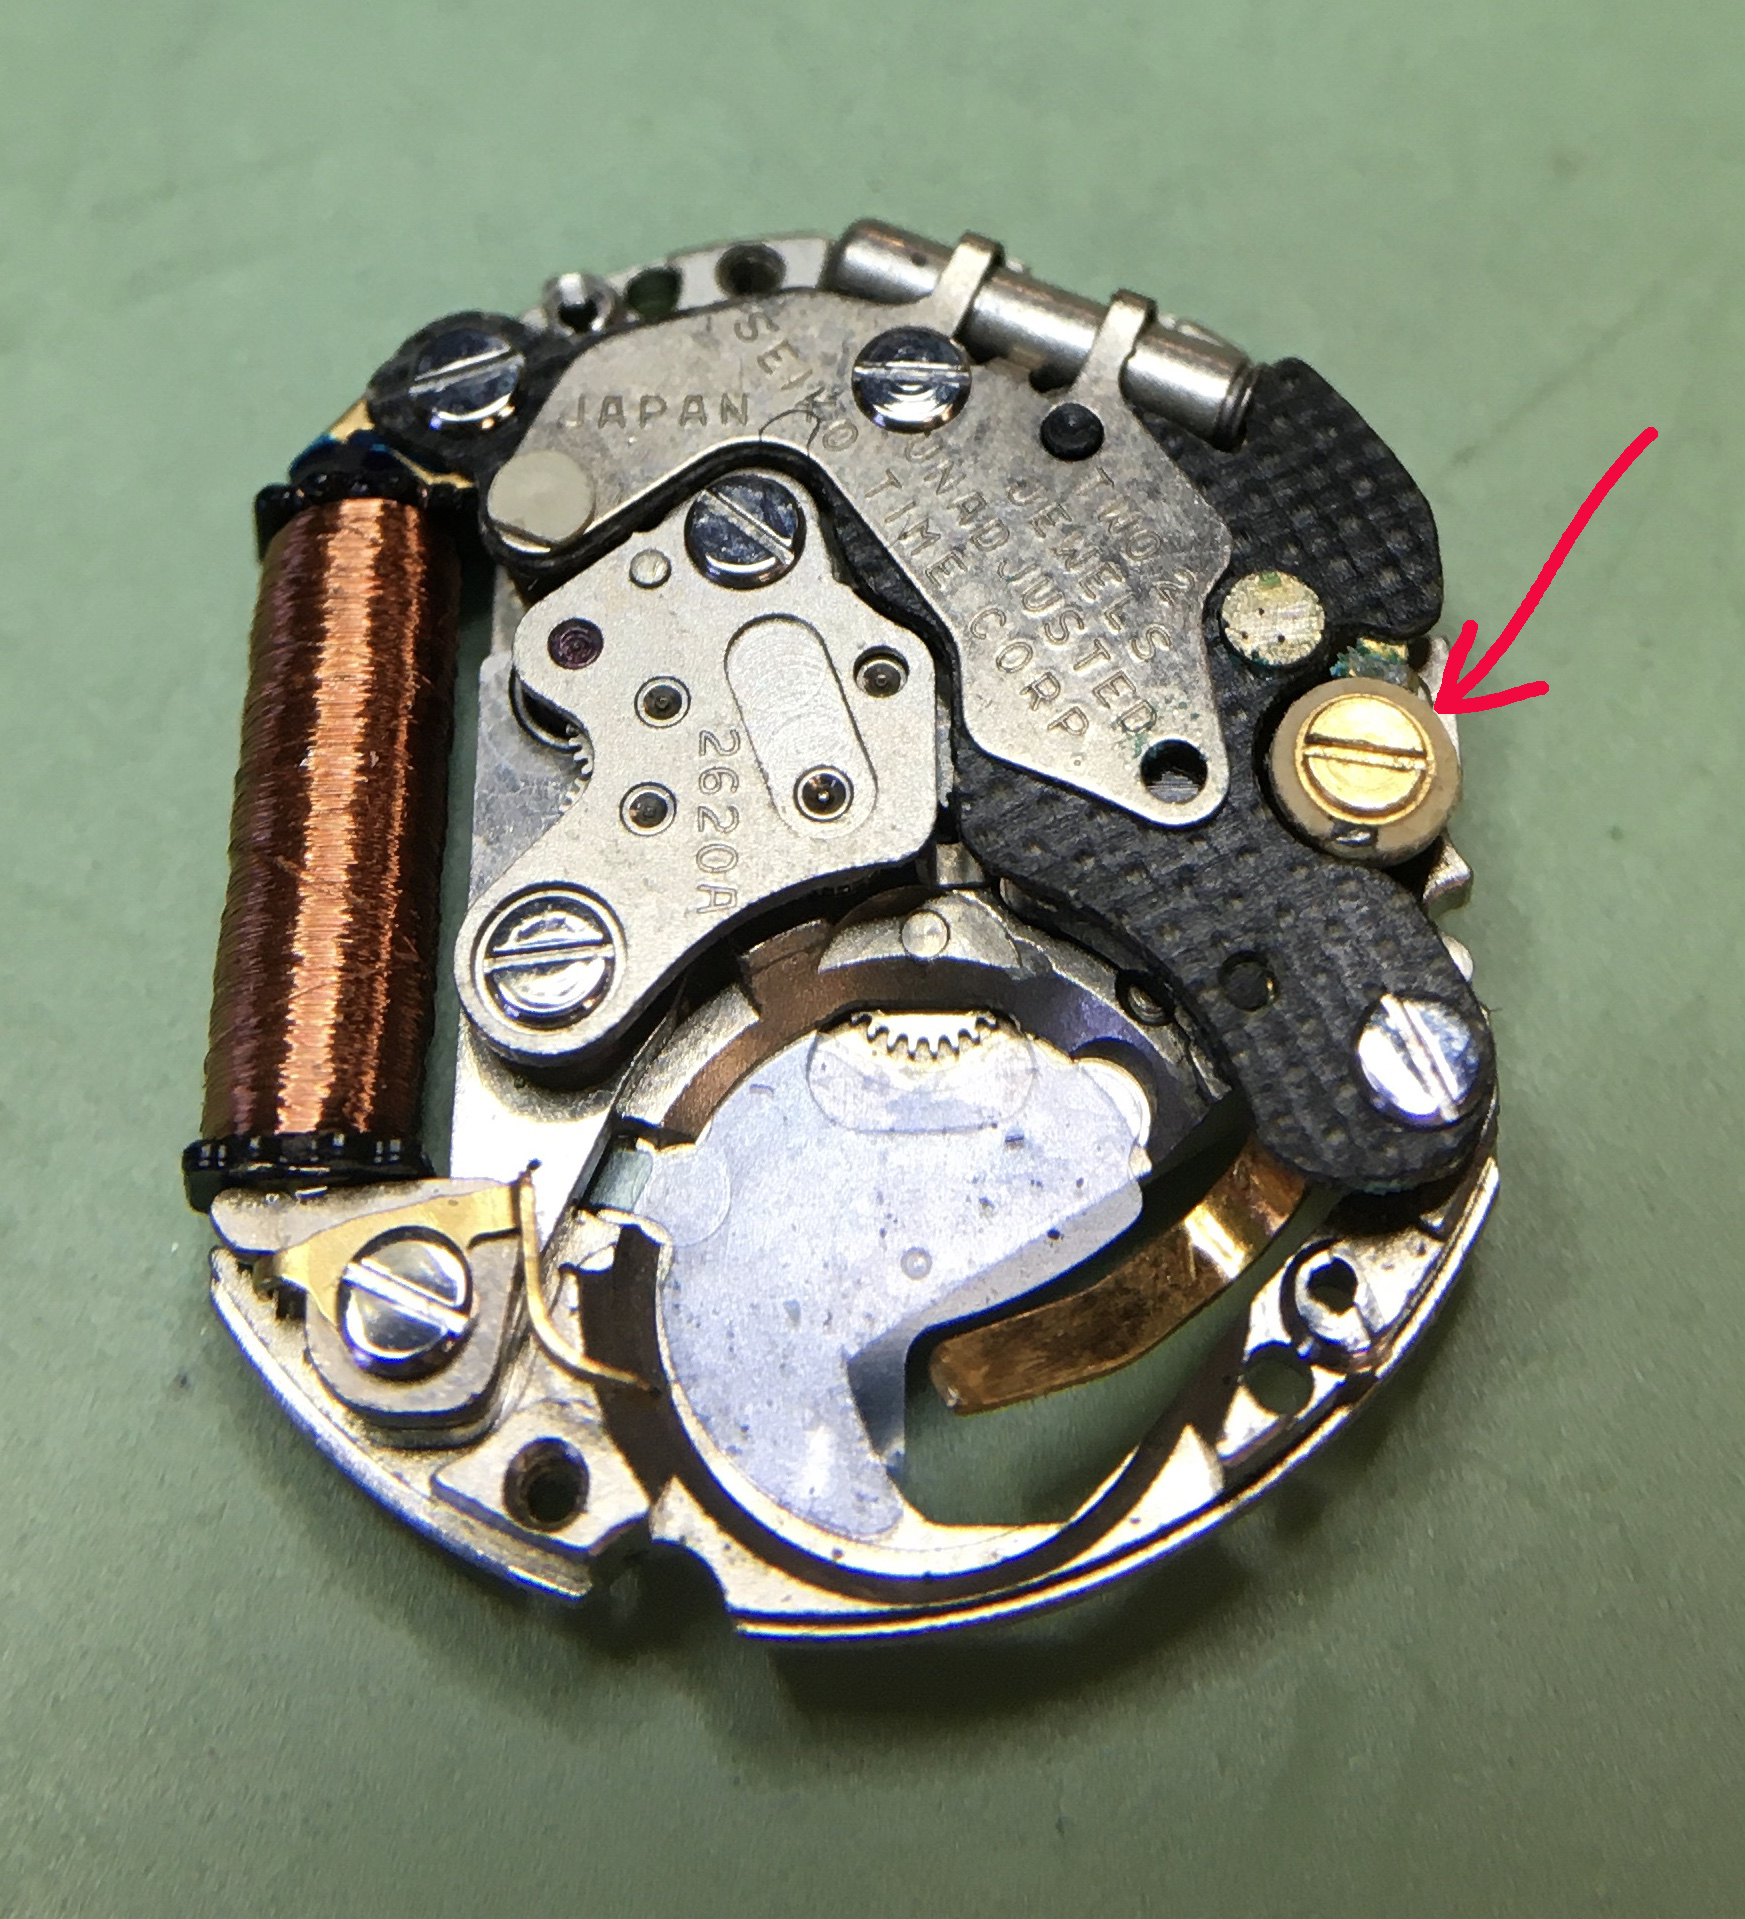 Seiko 2620A quartz technical manual - Service, Repair & Adjustment  Techniques (Not Timing or Regulation) - Watch Repair Talk